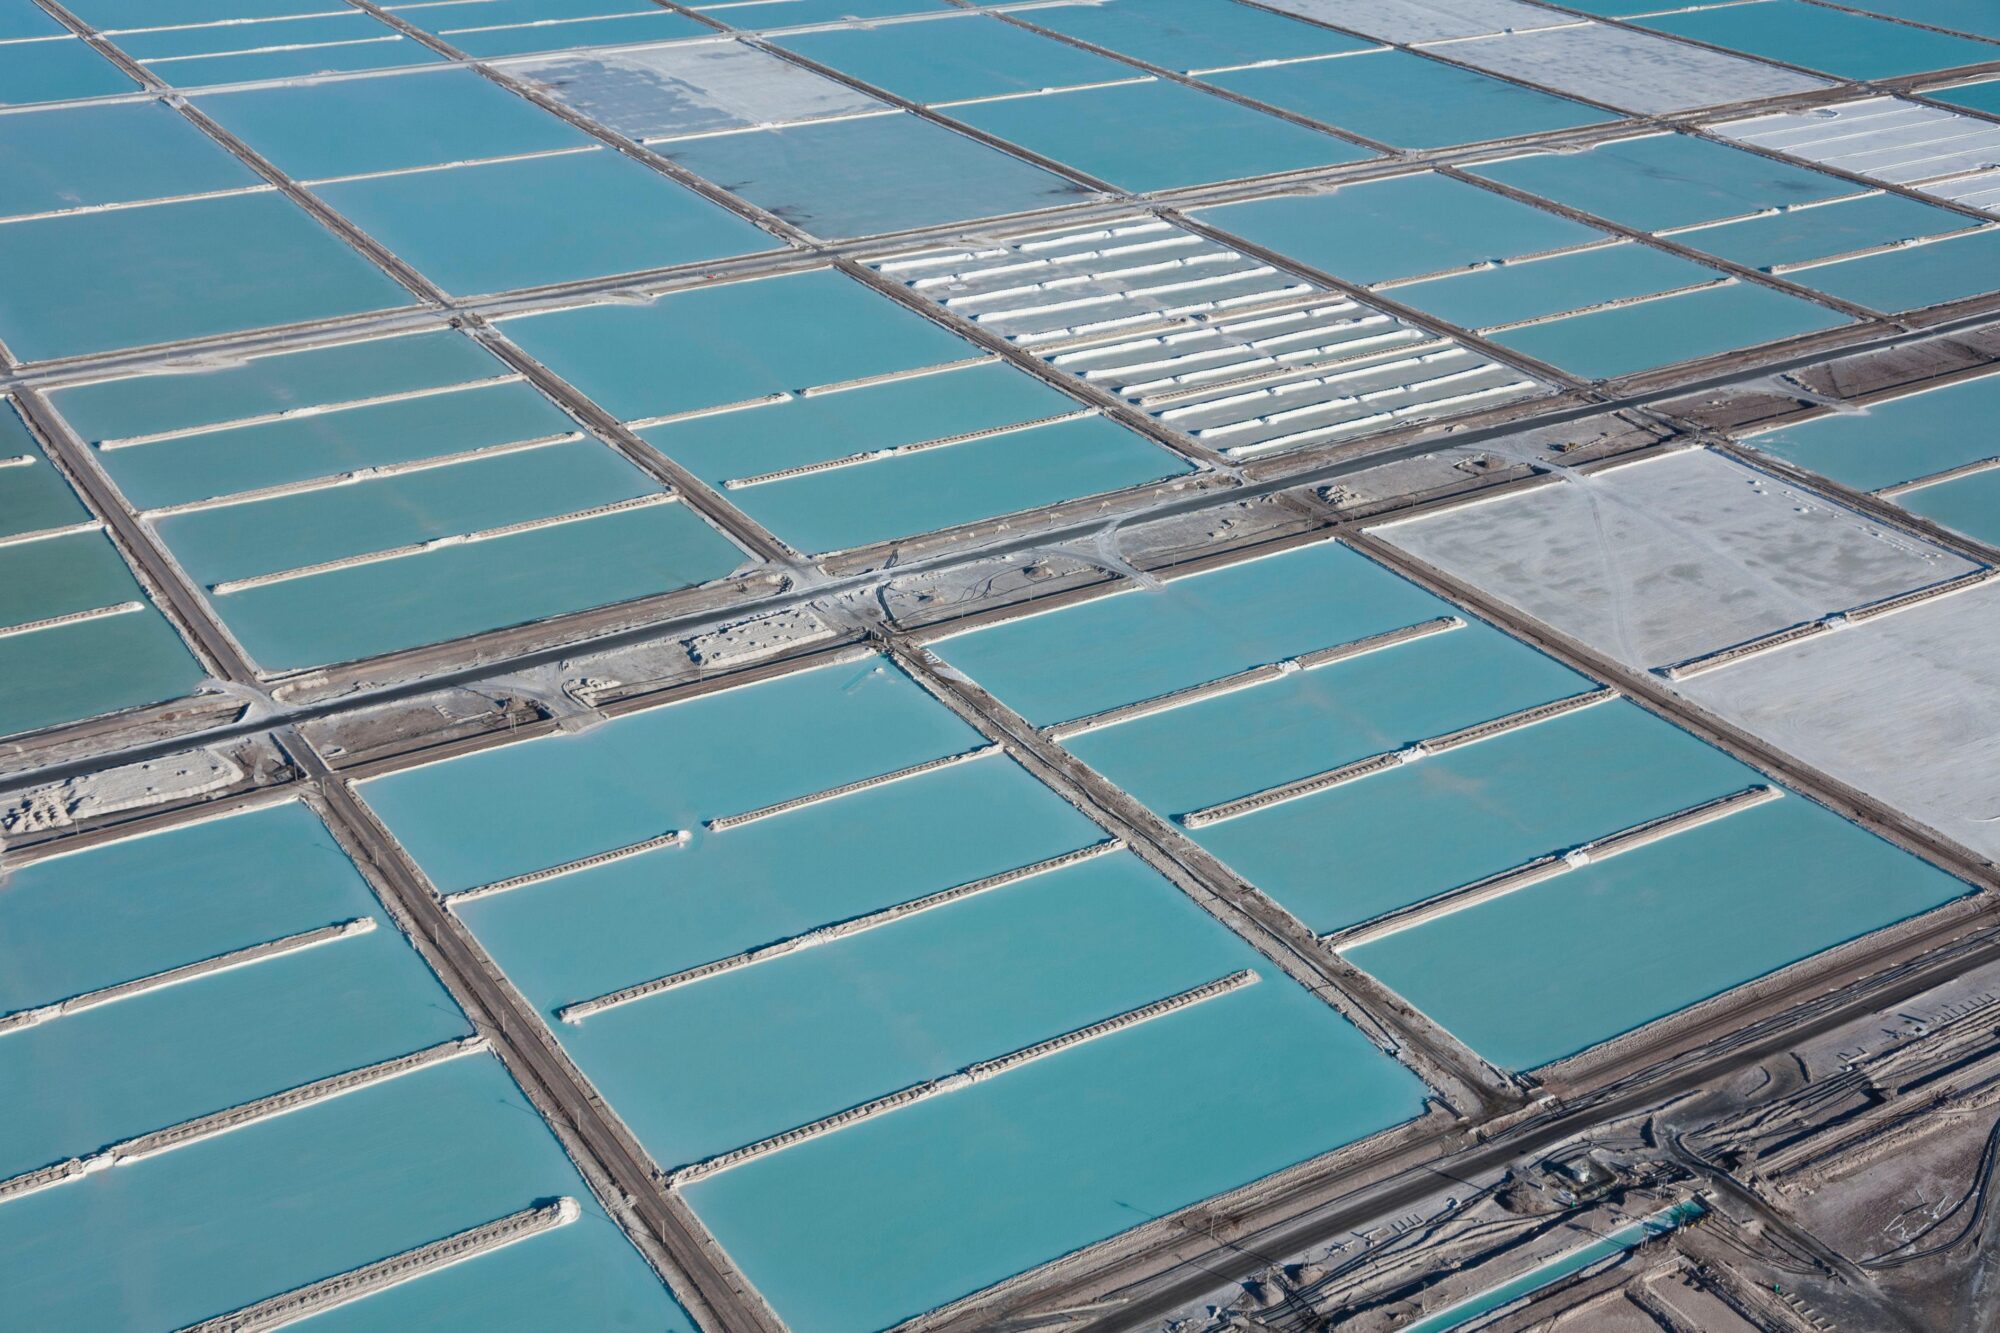 <p>Piletas de evaporación de litio de la empresa SQM en el Salar de Atacama, en Chile. El proceso, movilizado por energía solar, permite elevar el grado de concentración de litio en la salmuera, desde alrededor de un 0,2% inicial a un 6%. (Imagen: Hernis / Alamy)</p>